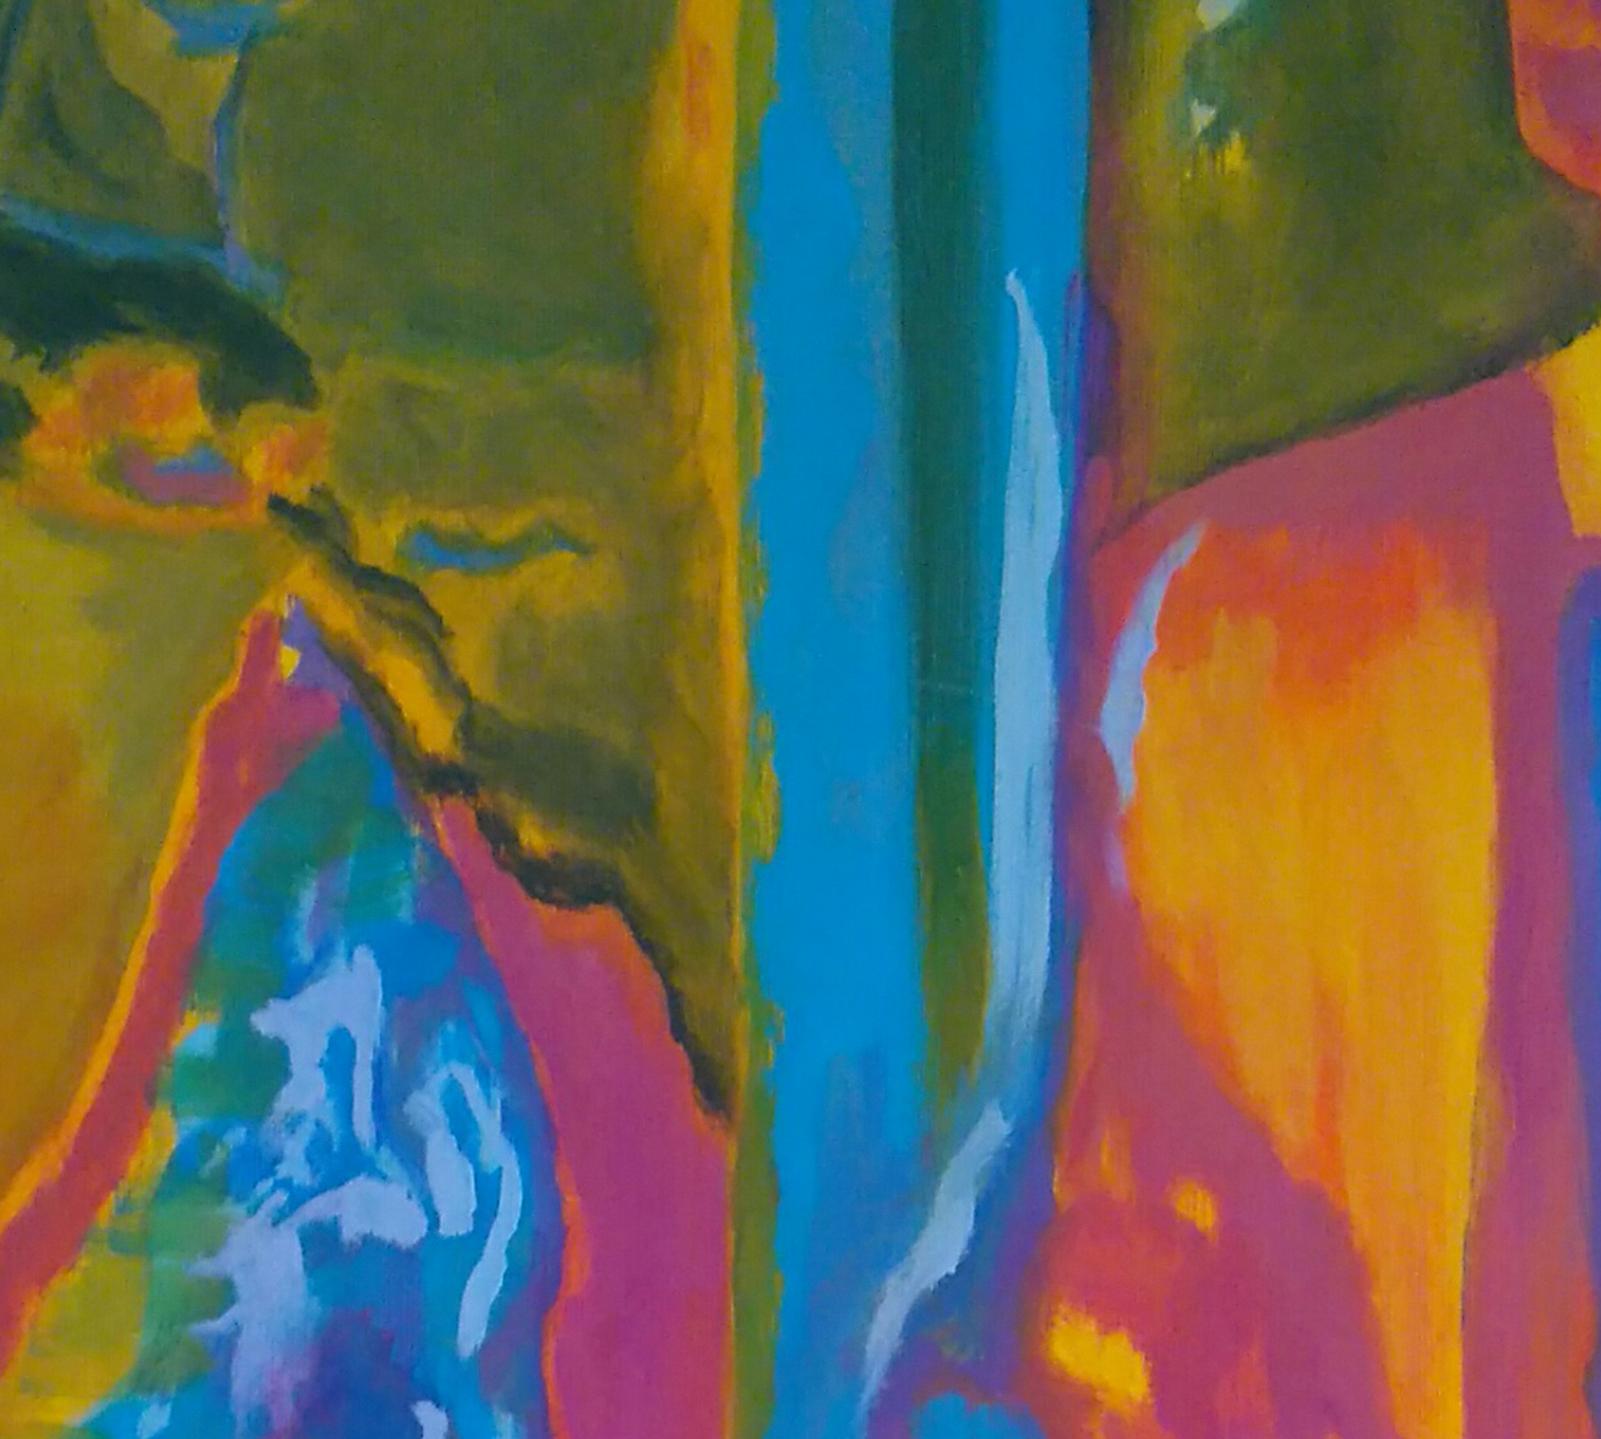  Art contemporain français par Brigitte Math - Figures - Painting de Brigitte Mathé